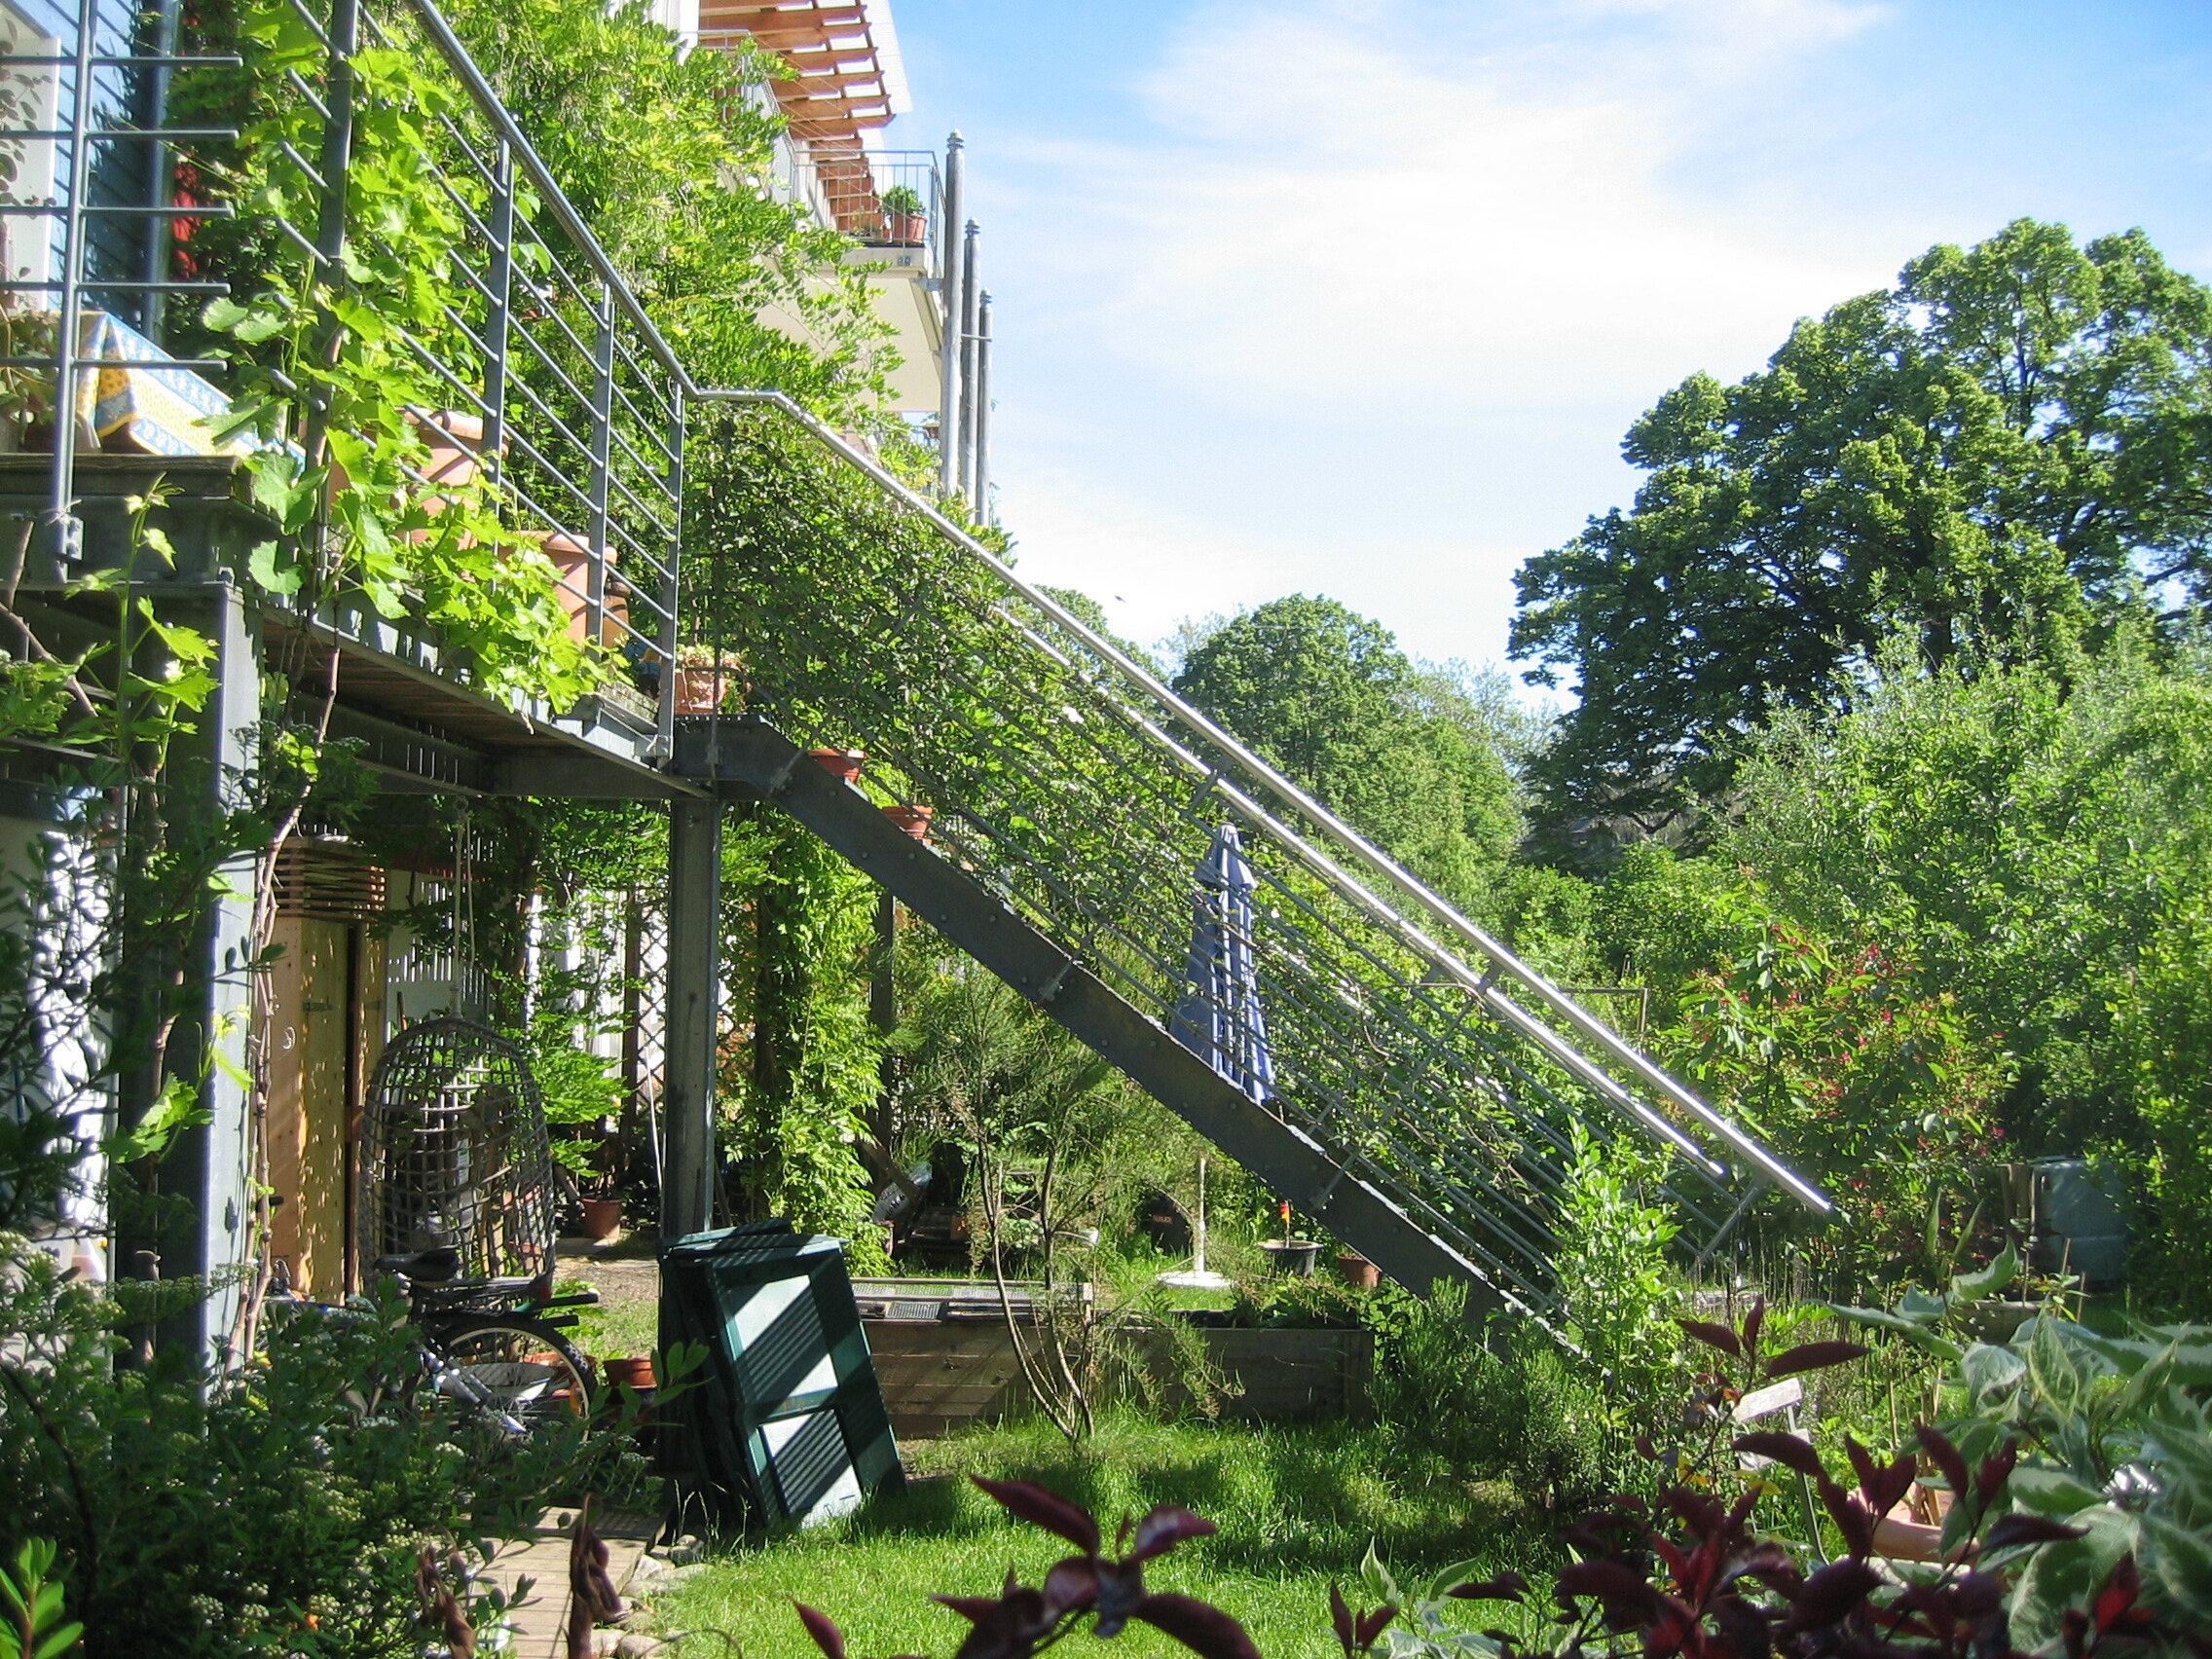 Private terrace facing onto a communal garden